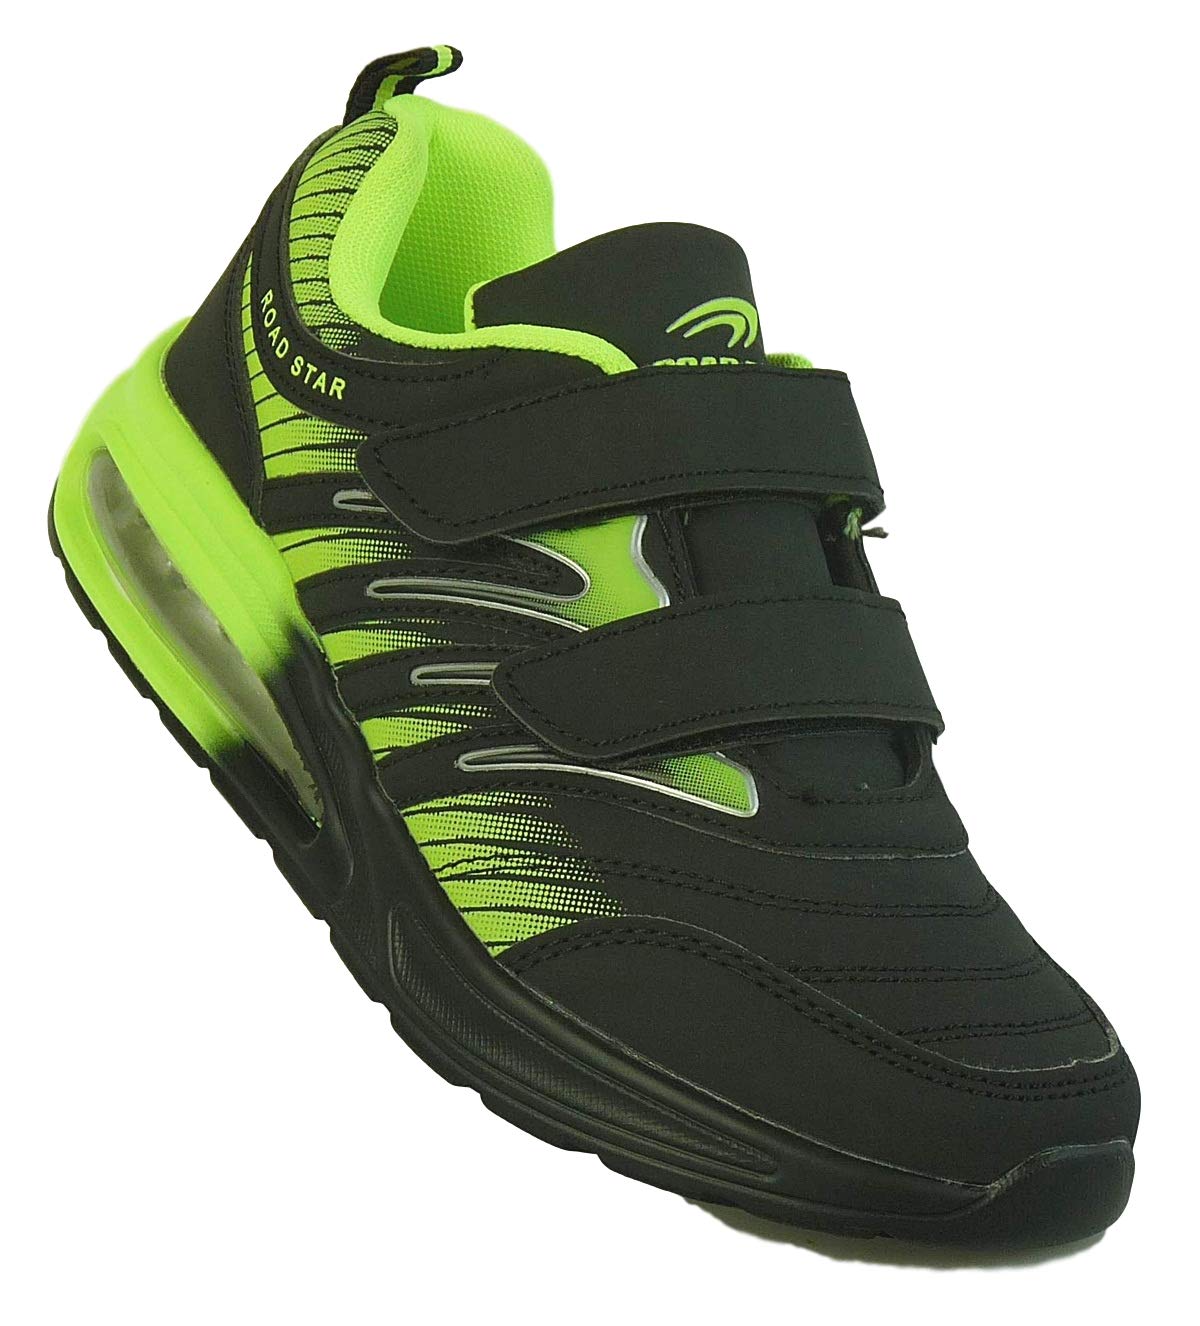 Bootsland Unisex Klett Sportschuhe Sneaker Turnschuhe Freizeitschuhe 001, Schuhgröße:36, Farbe:Schwarz/Grün